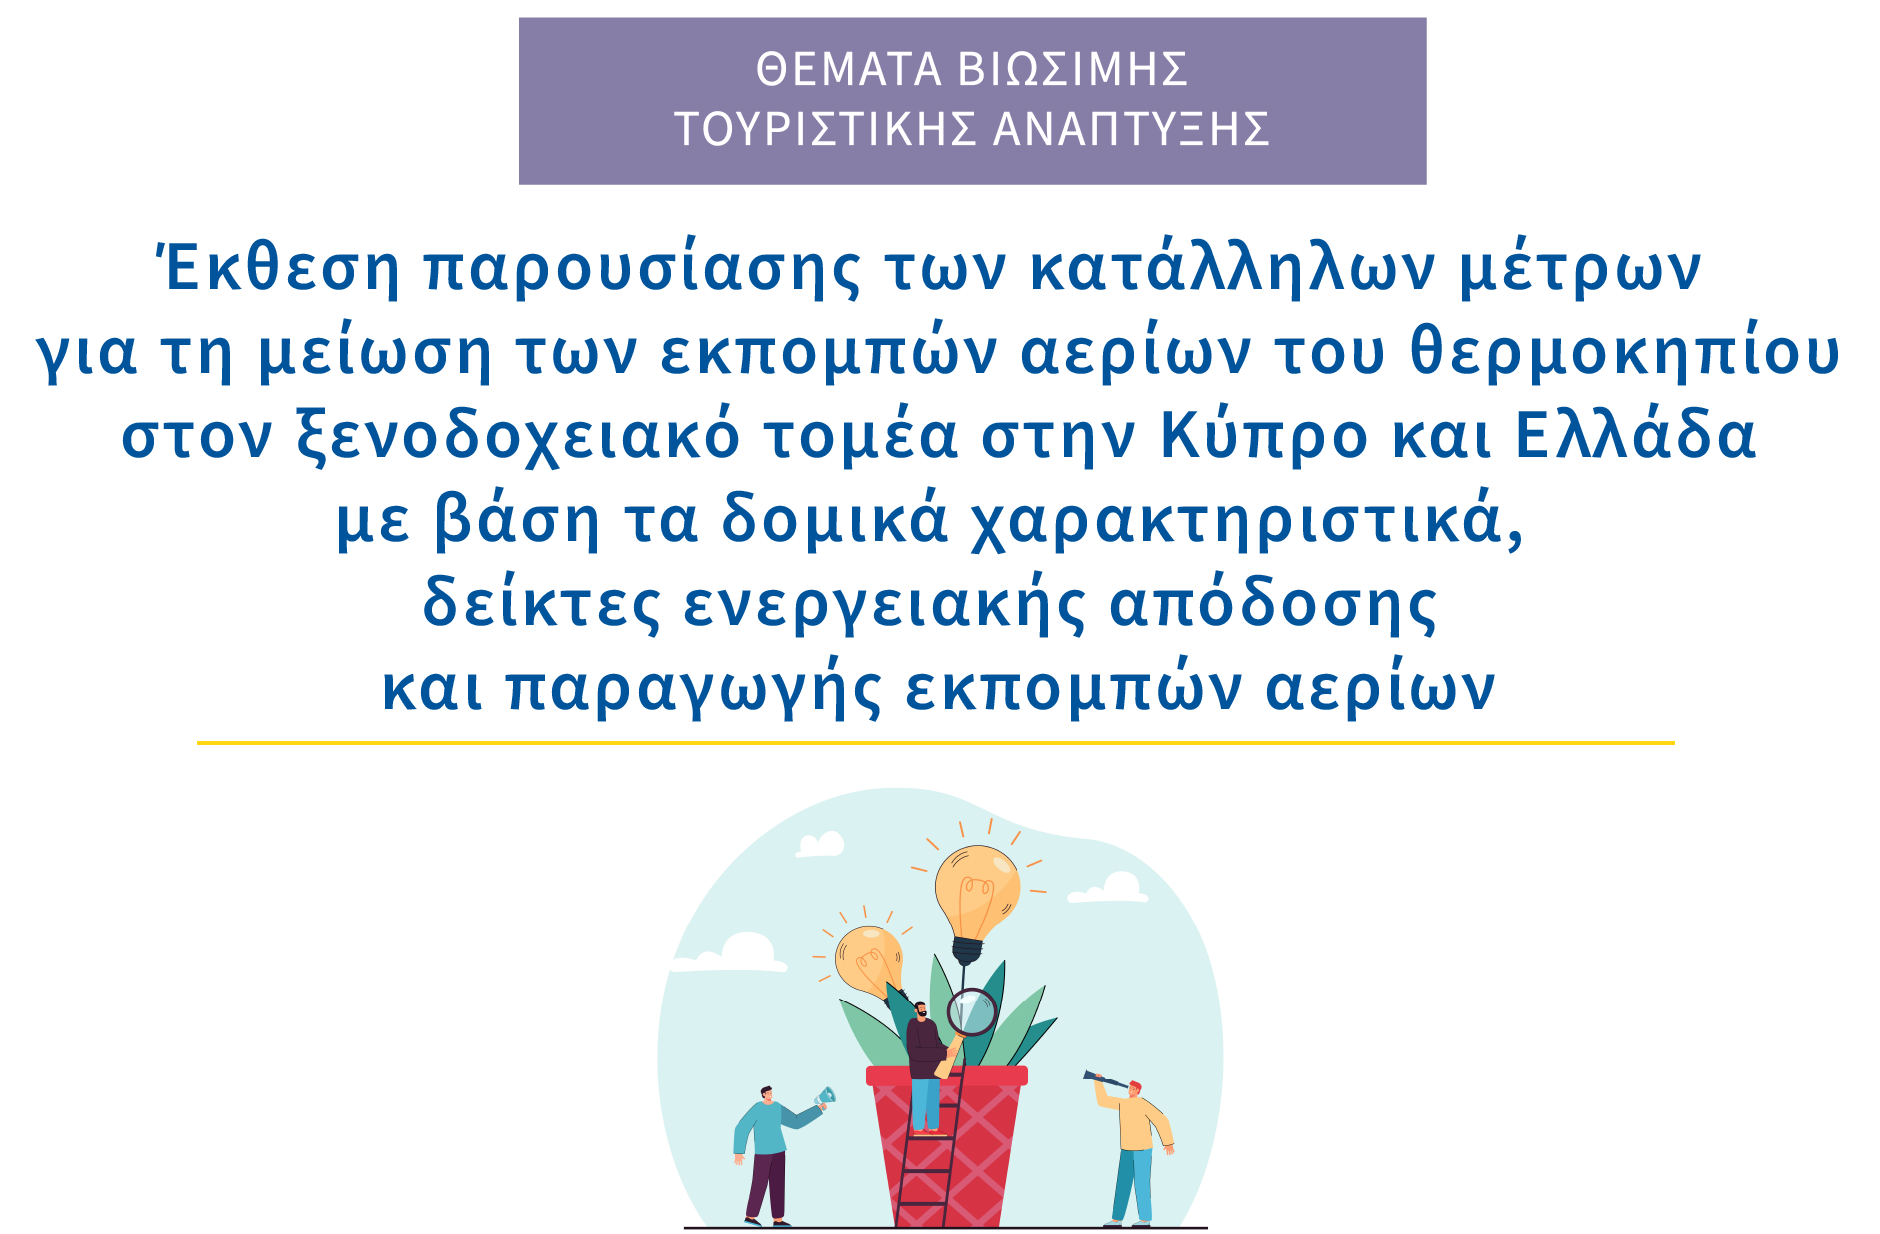 Έκθεση παρουσίασης των κατάλληλων μέτρων για τη μείωση των εκπομπών αερίων του θερμοκηπίου στον ξενοδοχειακό τομέα στην Κύπρο και Ελλάδα με βάση τα δομικά χαρακτηριστικά, δείκτες ενεργειακής απόδοσης και παραγωγής εκπομπών αερίων